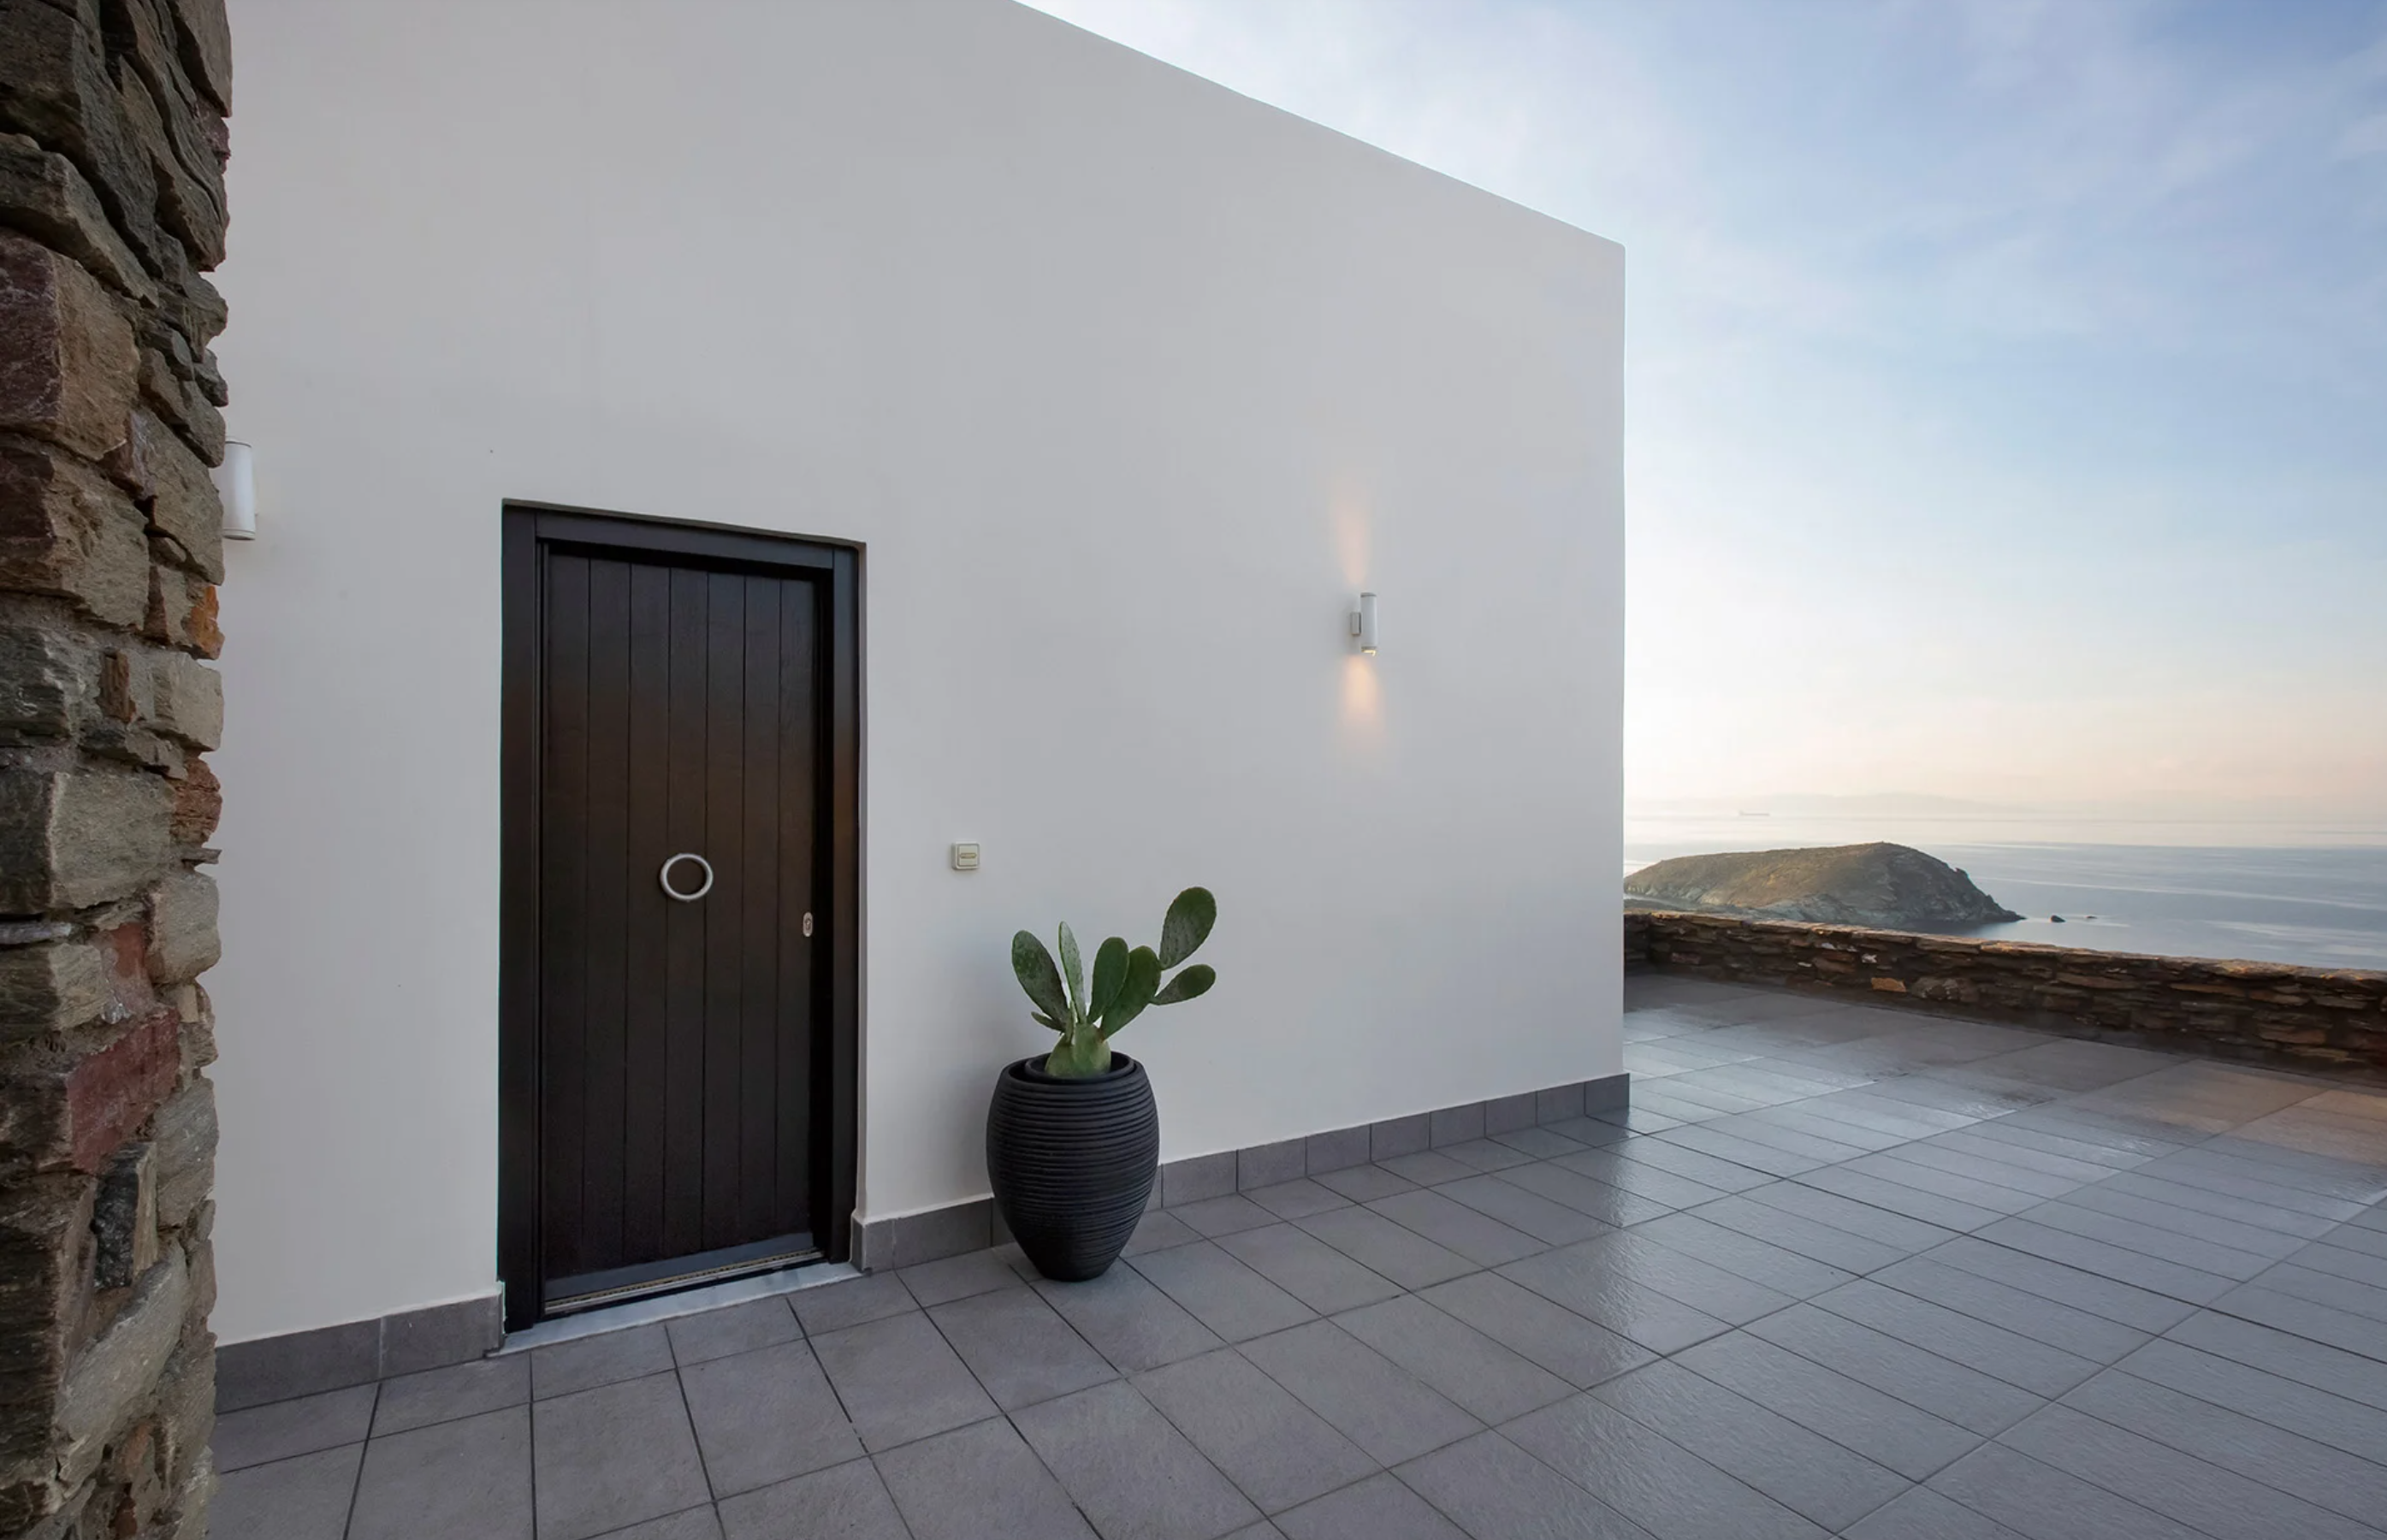 Capture Greece kéa location villa de luxe luxury rental 2023-11-15 à 10.43.48